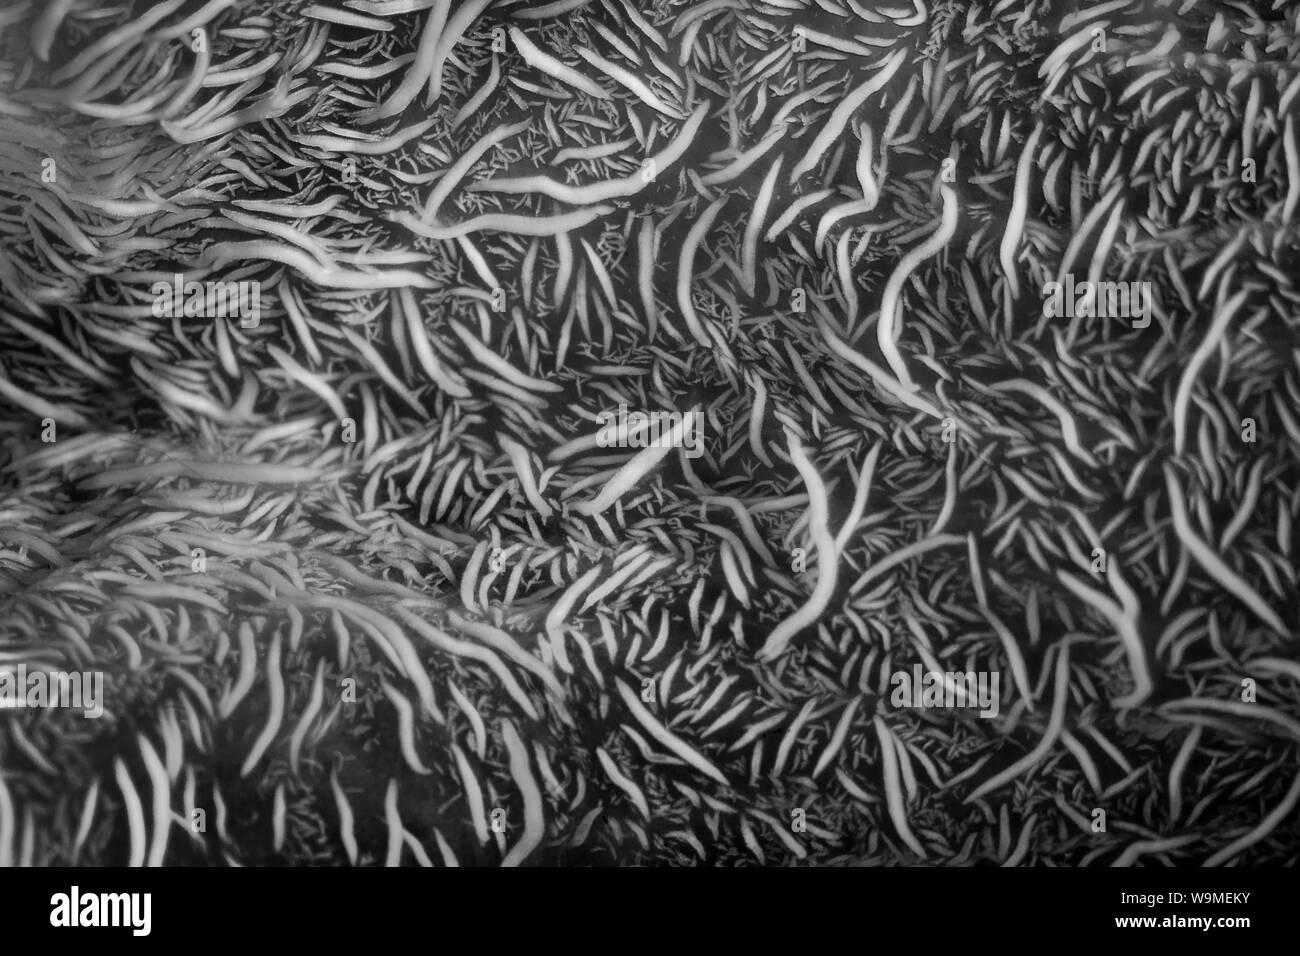 Eine extravagante Tintenfische kriecht über den schwarzen Sand vom Meeresboden in Lembeh Strait, Indonesien. Diese kopffüßer wird gedacht, giftig zu sein und selten gesehen. Stockfoto